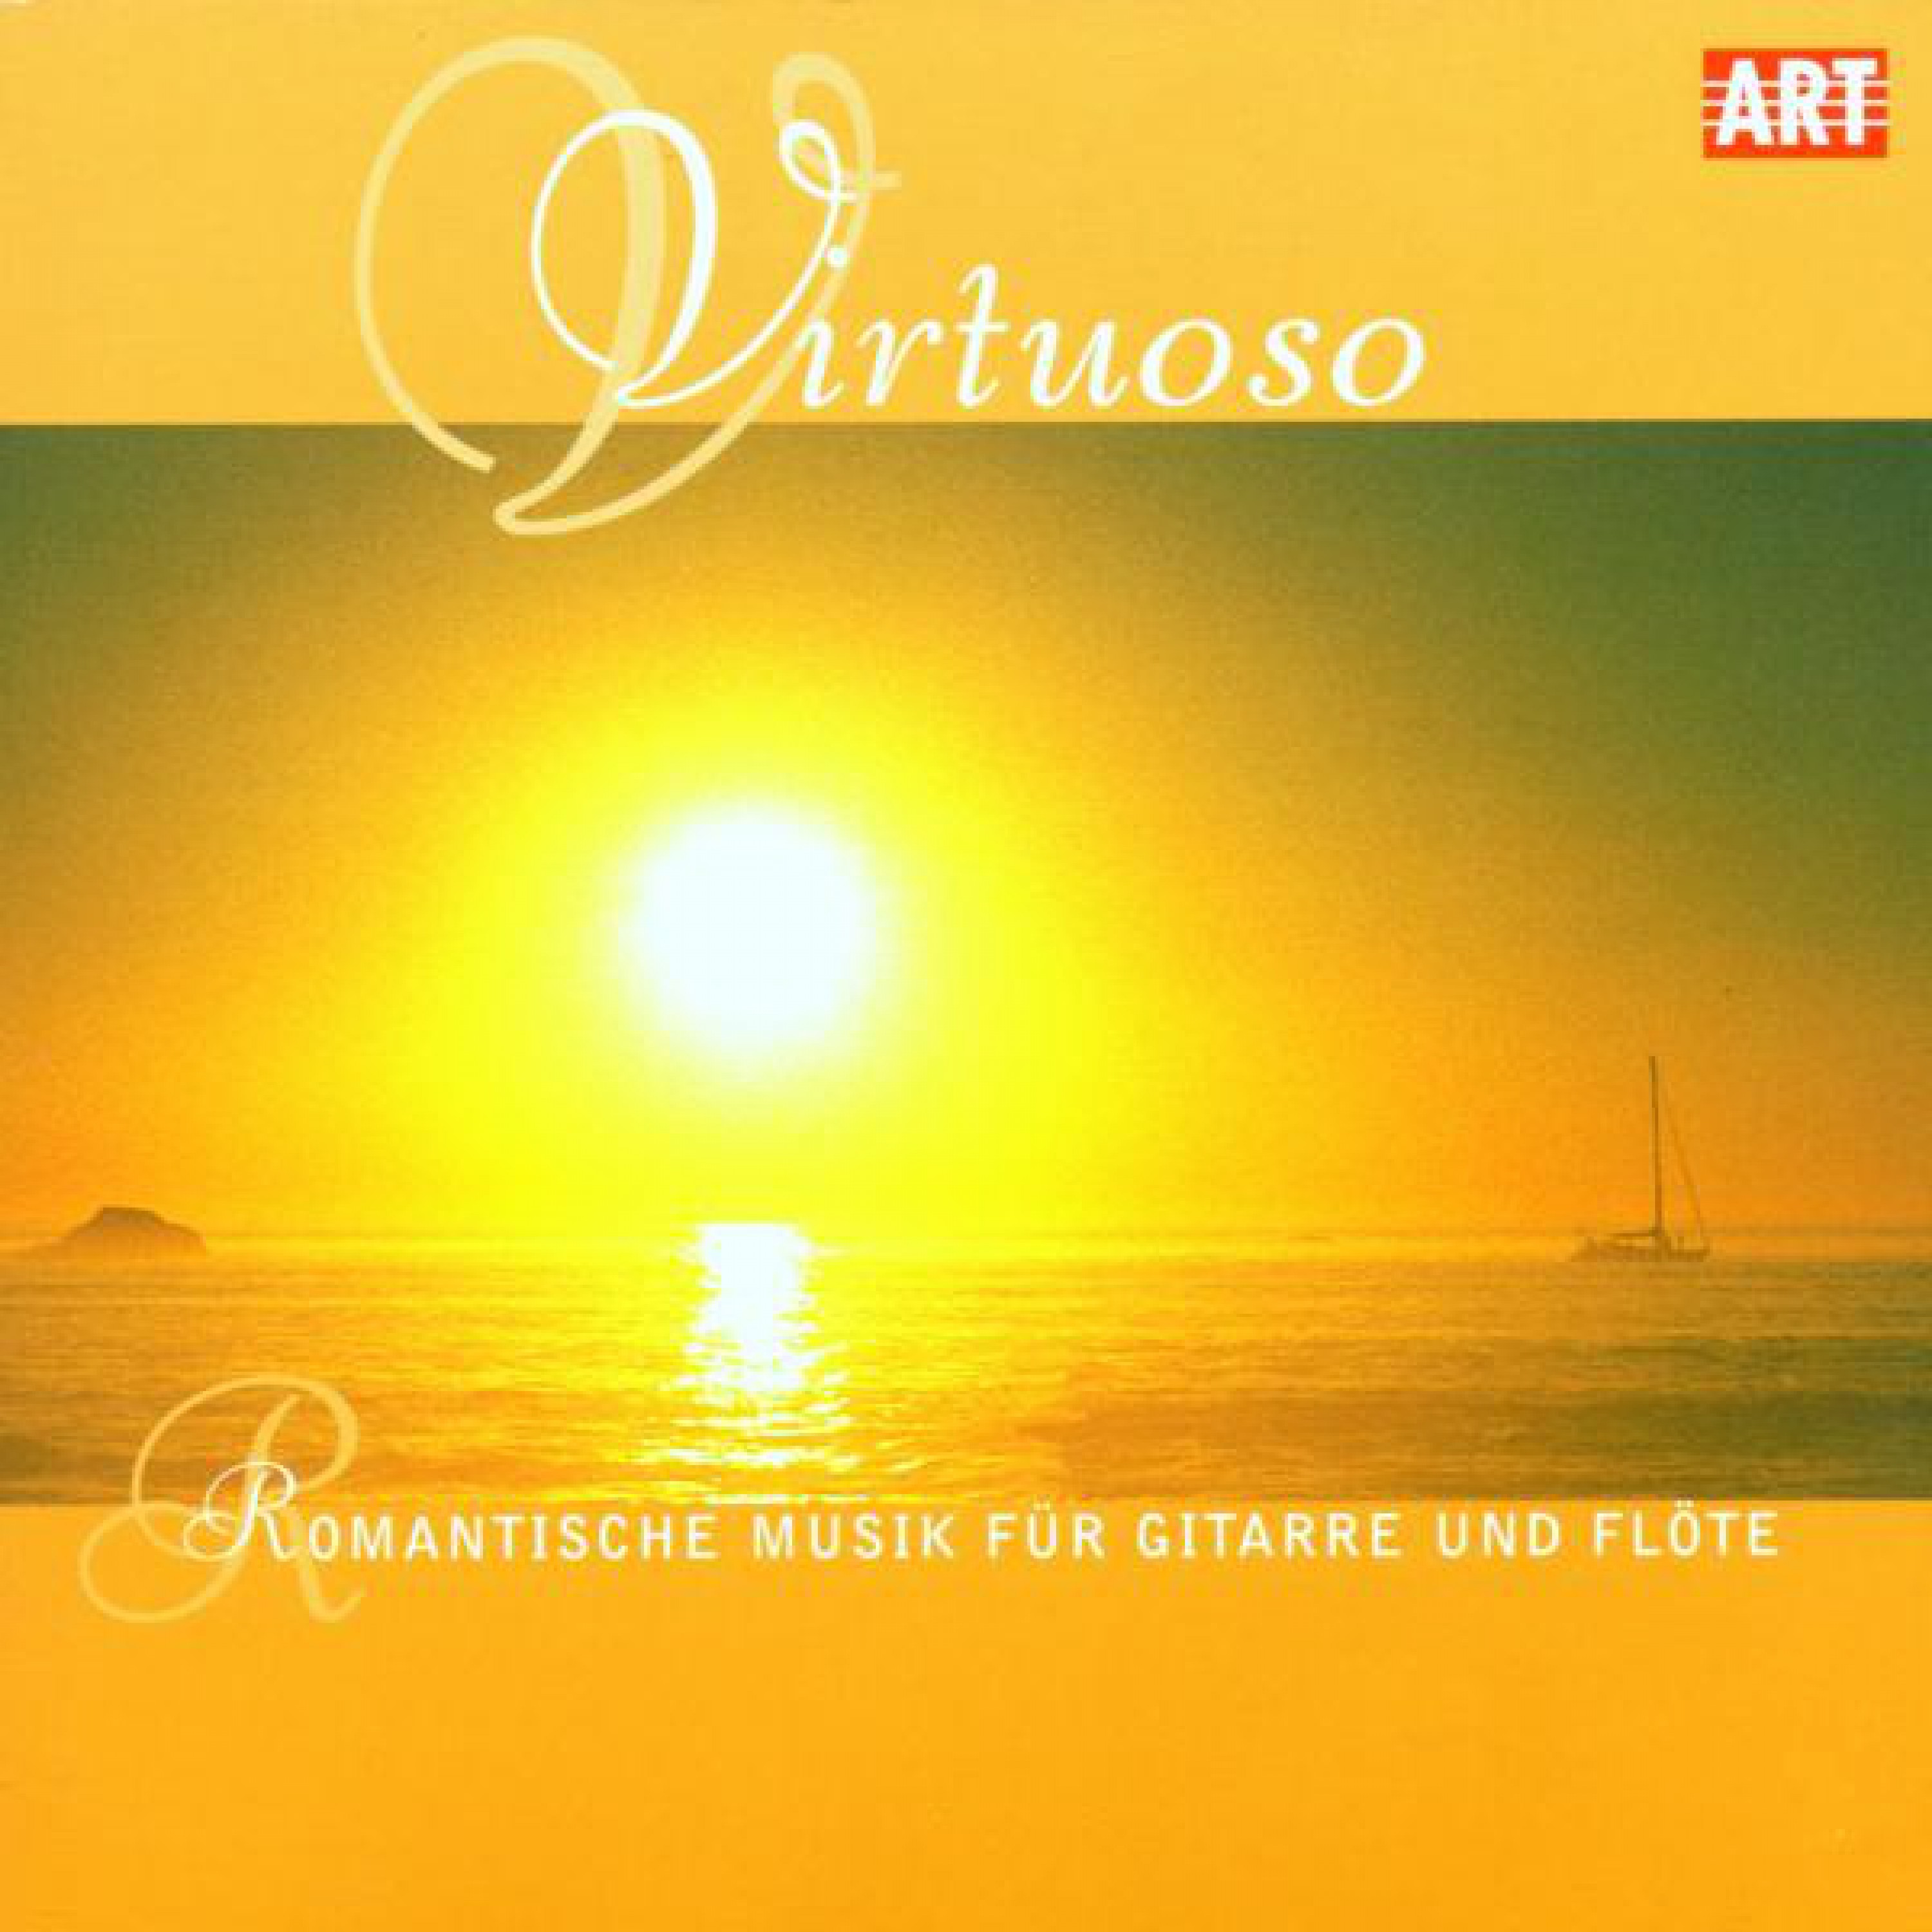 Great Sonata Op. 85 for Flute and Guitar: Andante molto sostenuto